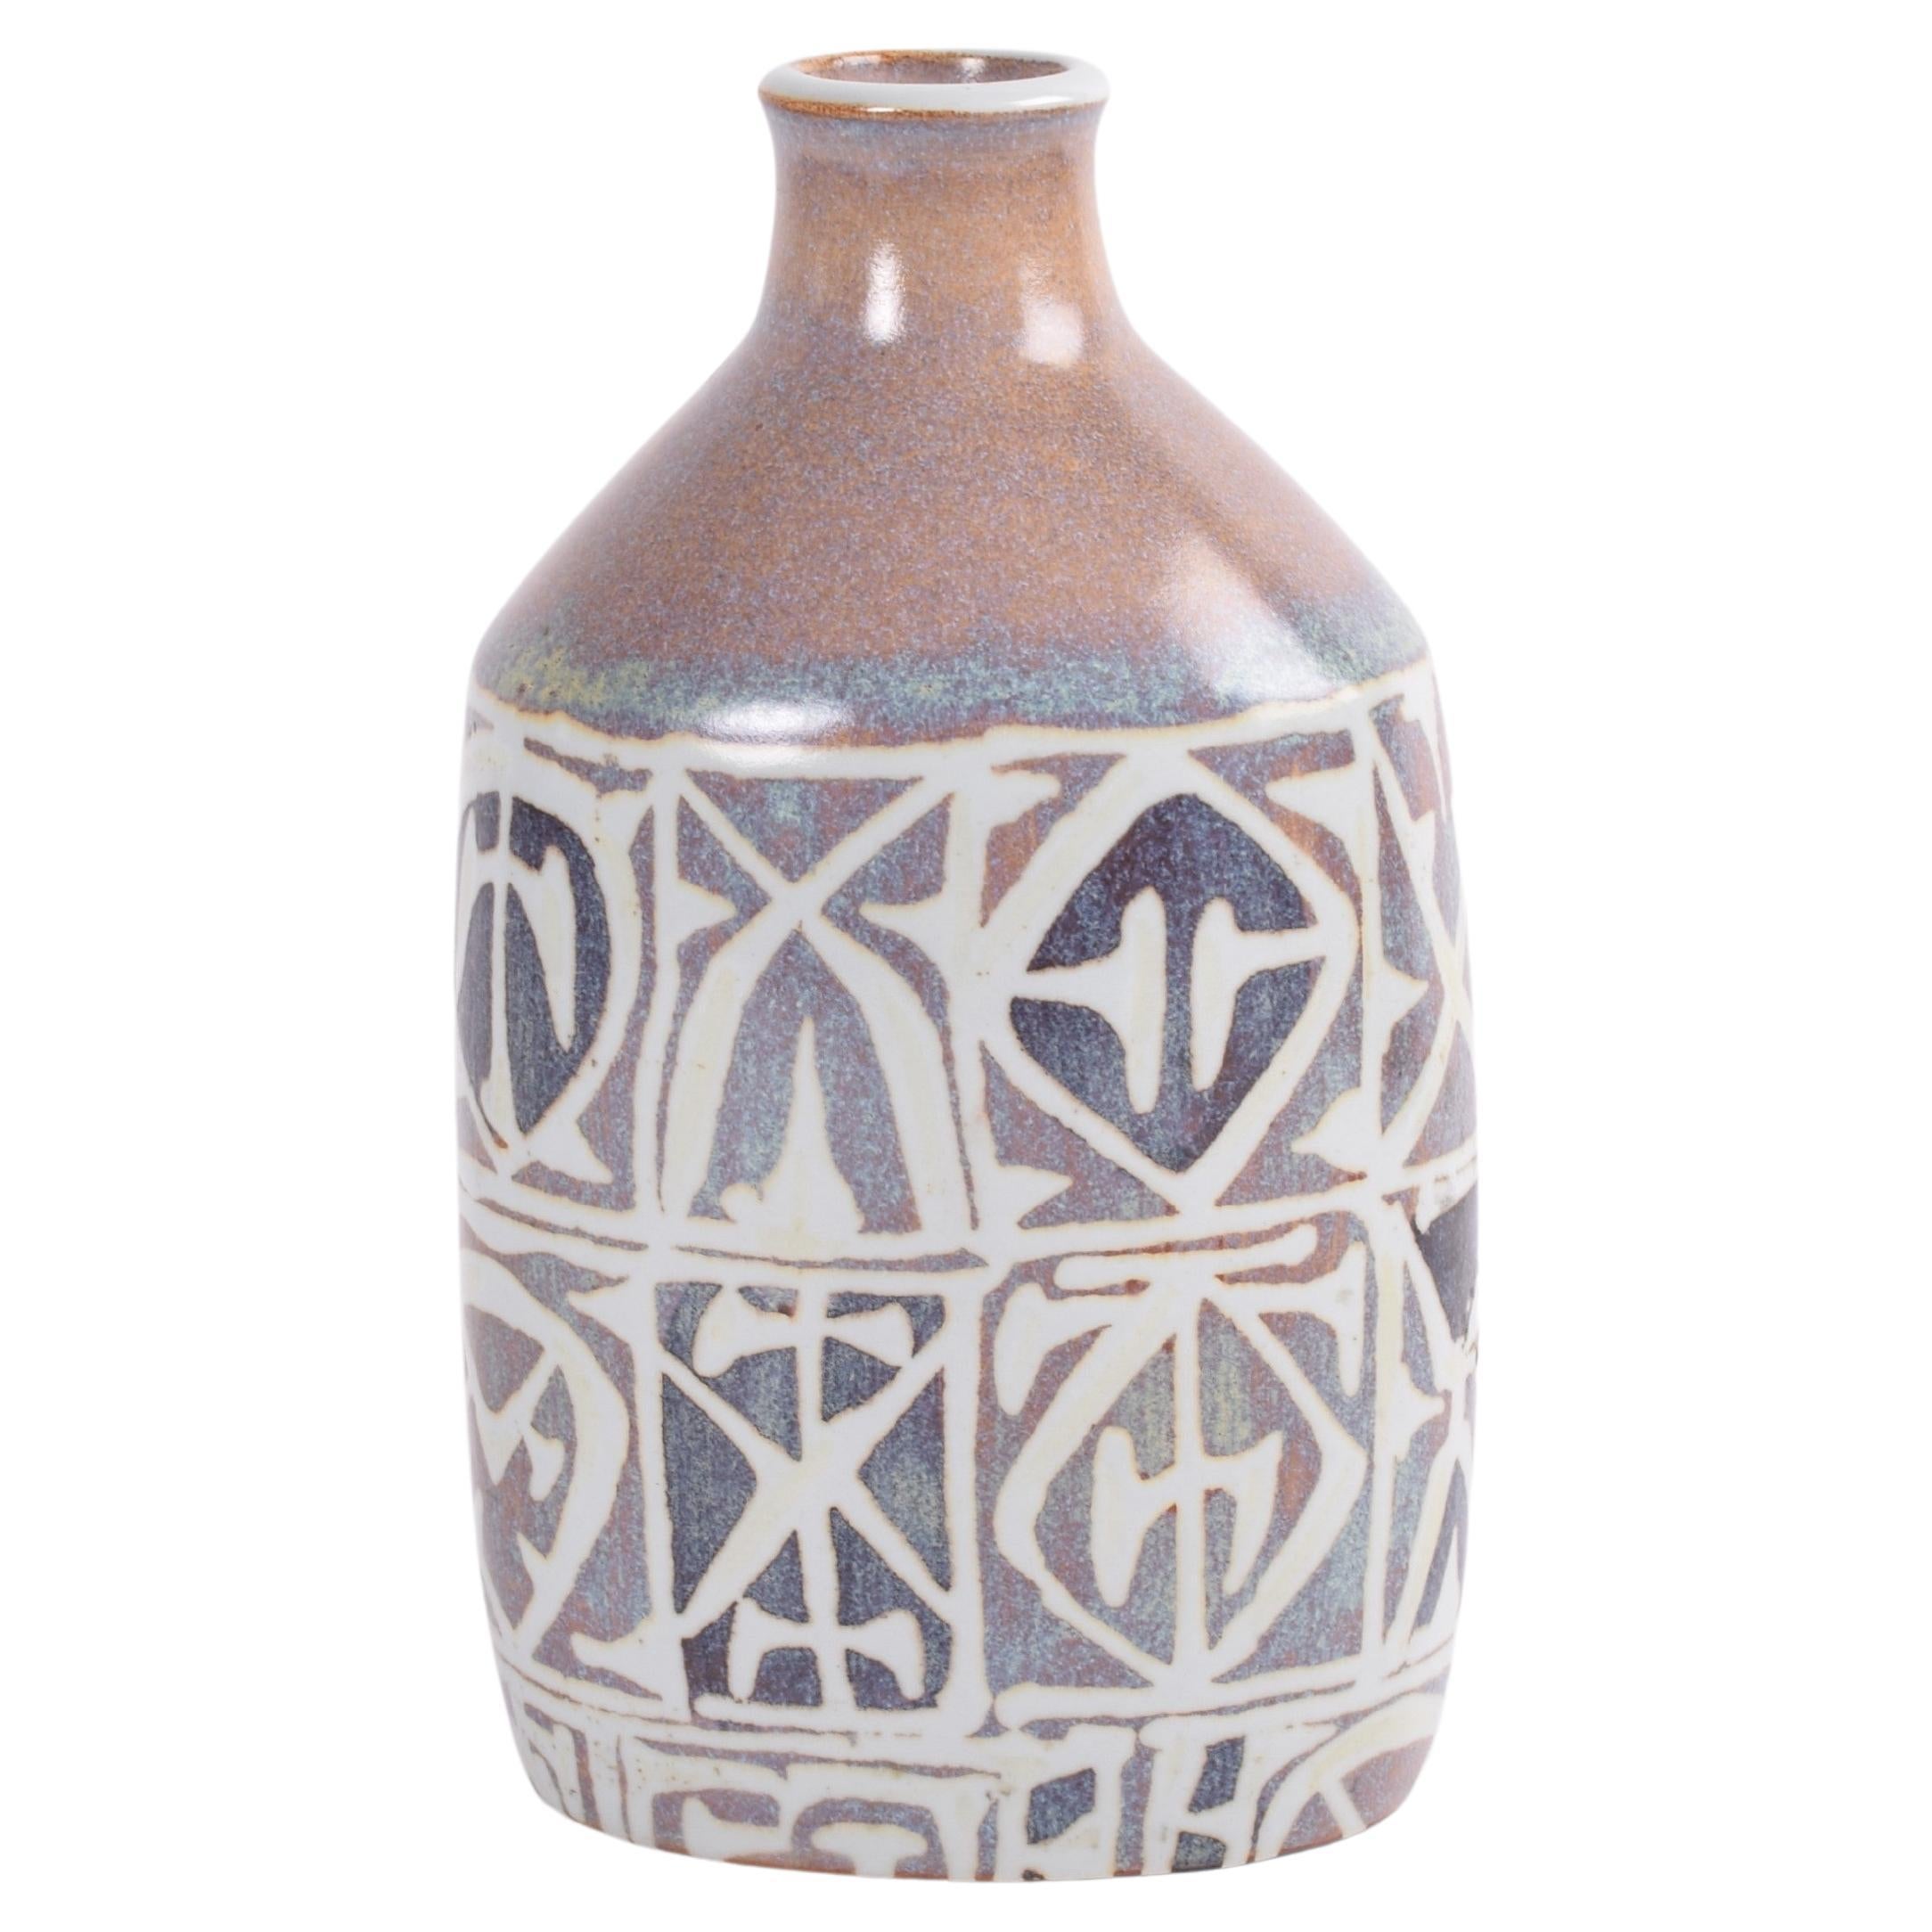 Nils Thorsson für Aluminia Baca, Flask-Vase, abstraktes Dekor, dänische Keramik, 1960er-Jahre